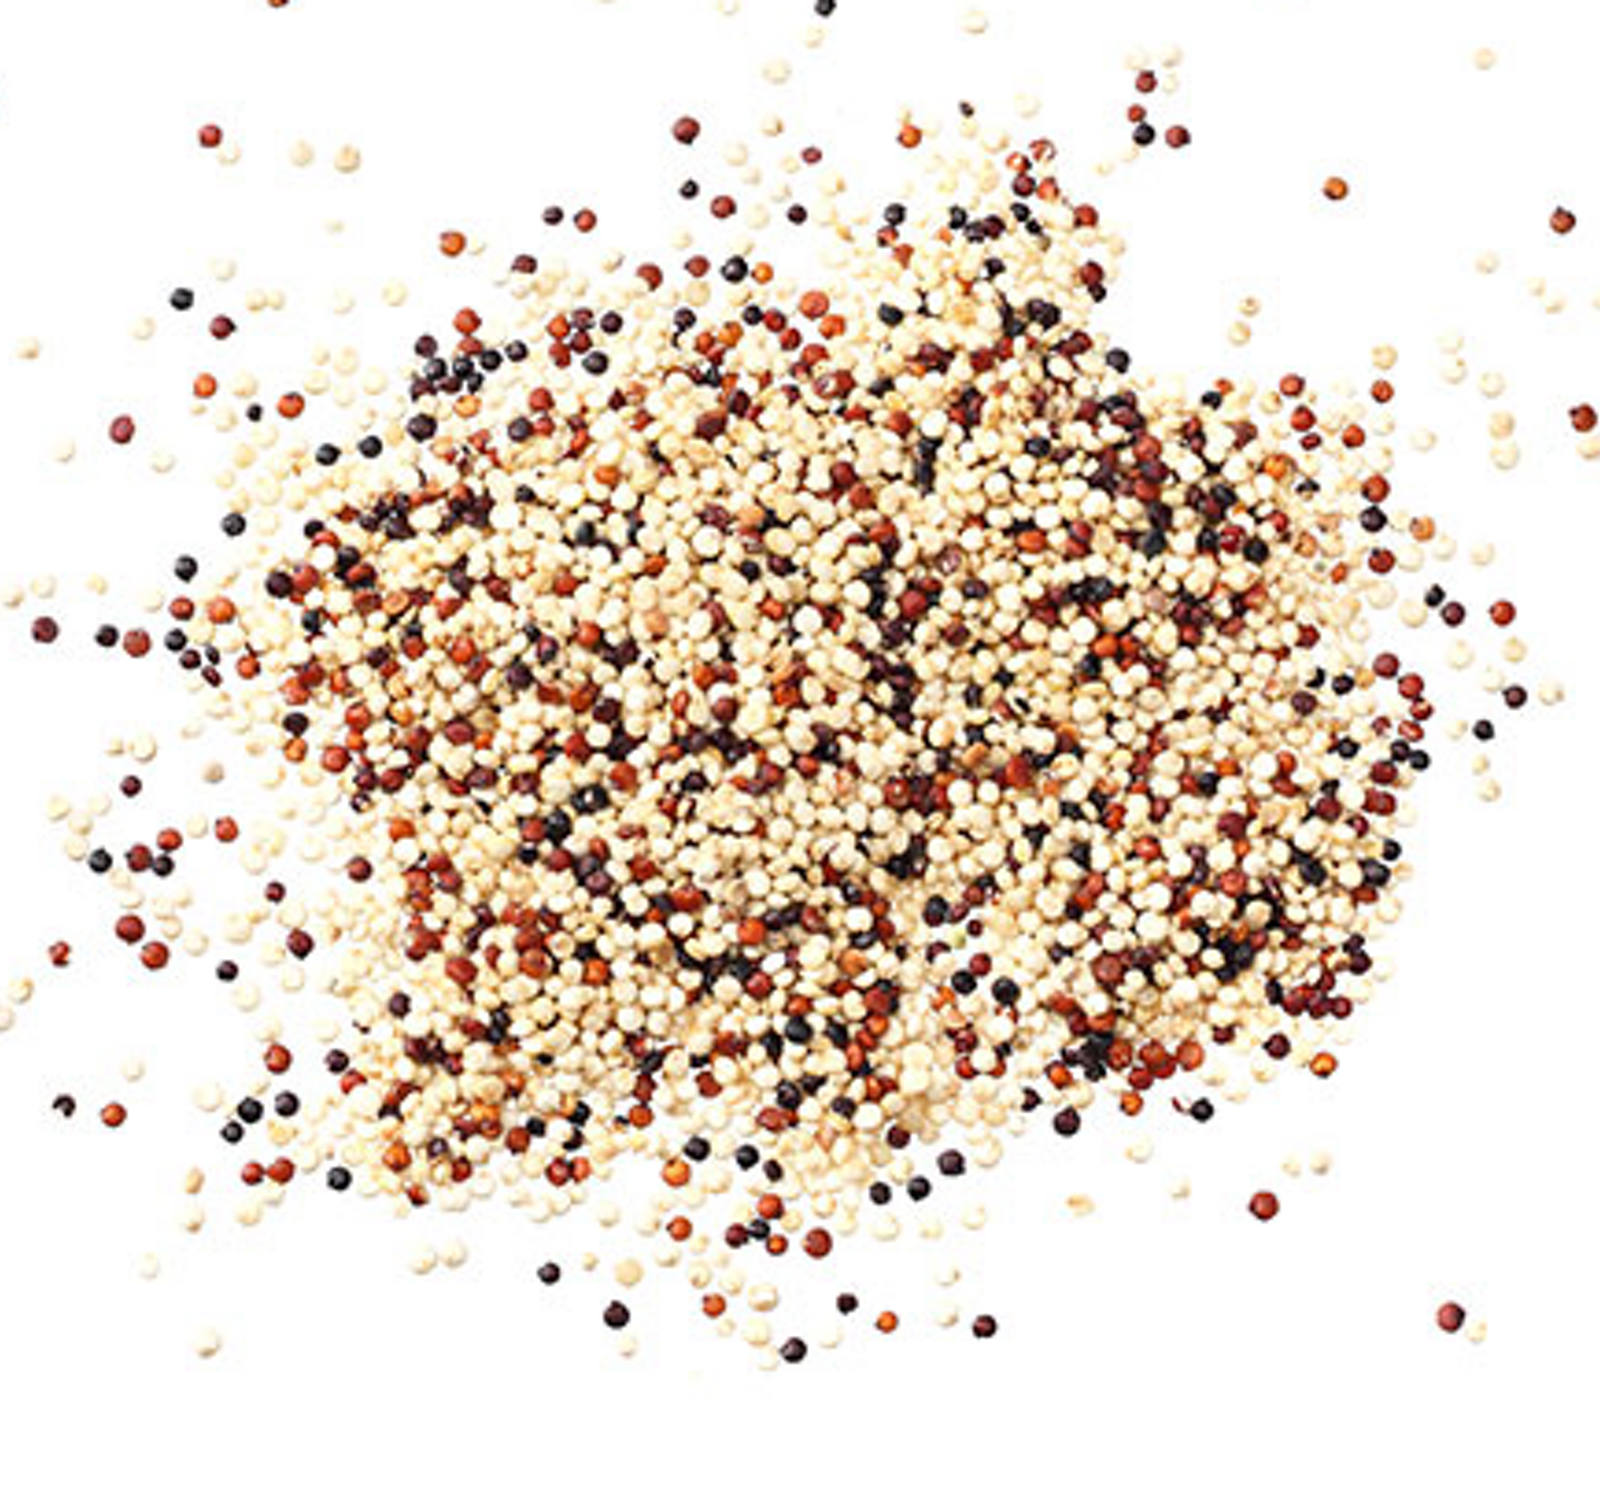 pflanzliche-proteine-quinoa.jpg